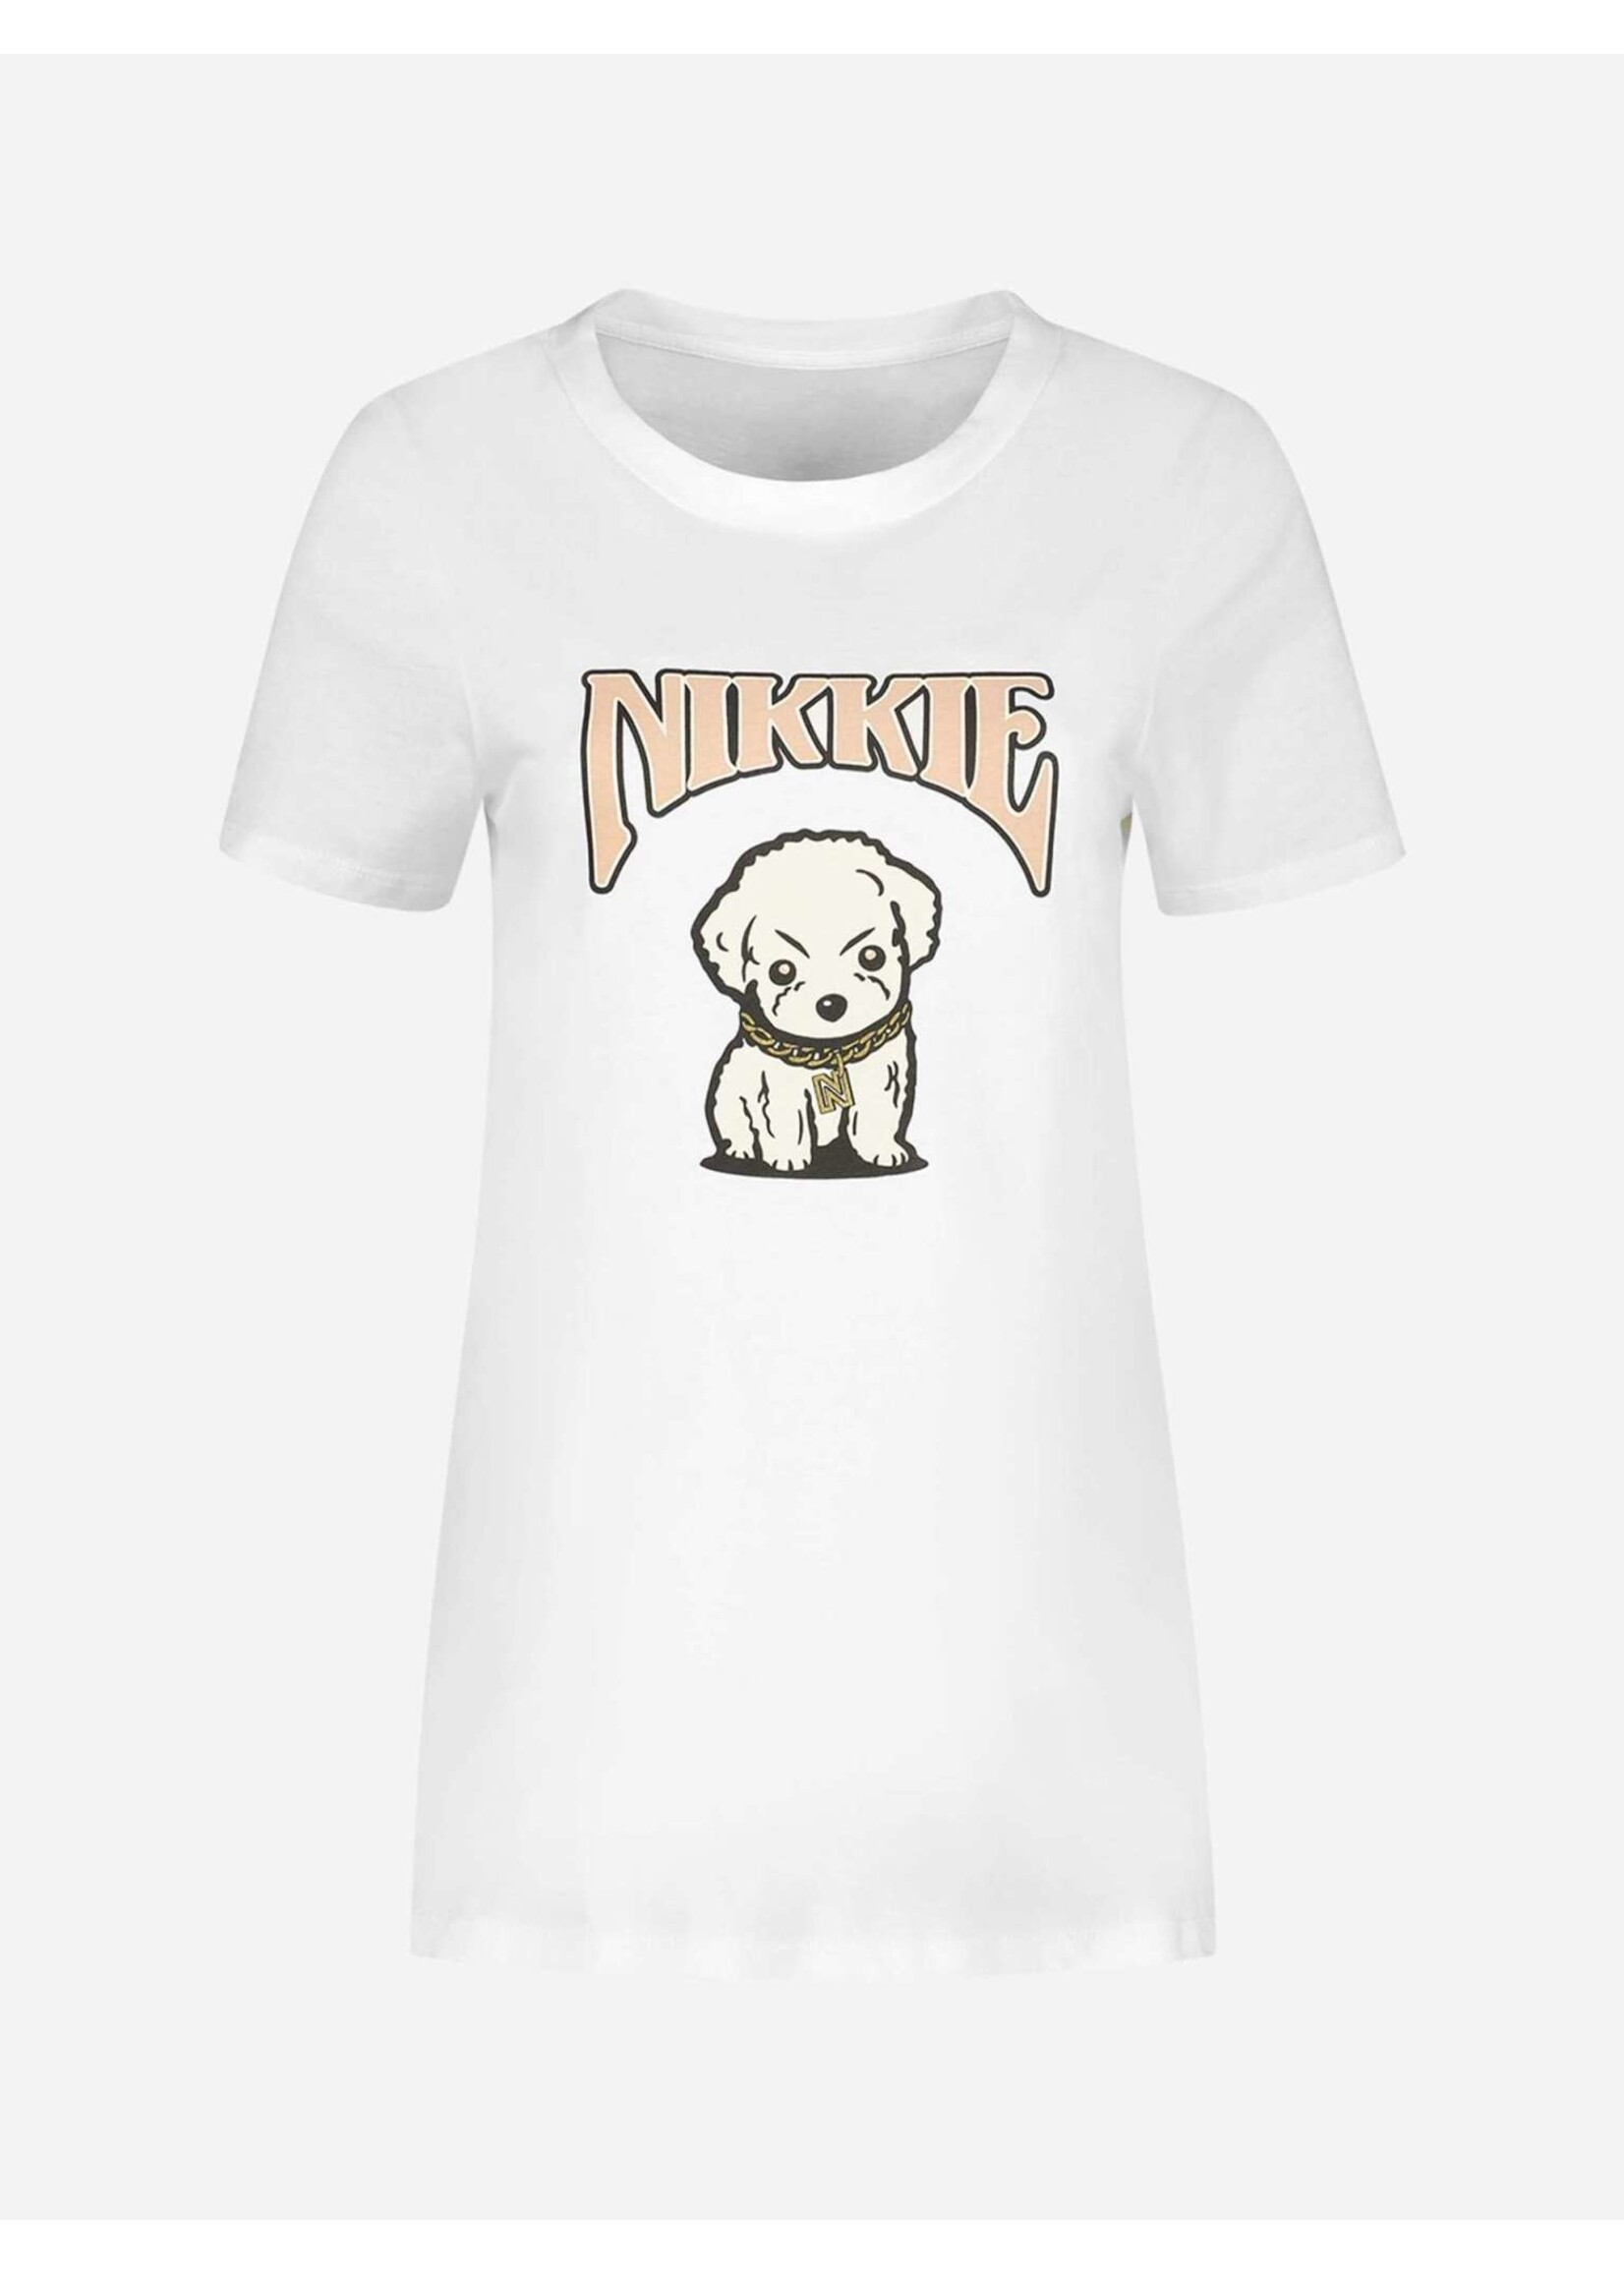 NIKKIE NIKKIE - Bobbie T-shirt met artwork - Wit